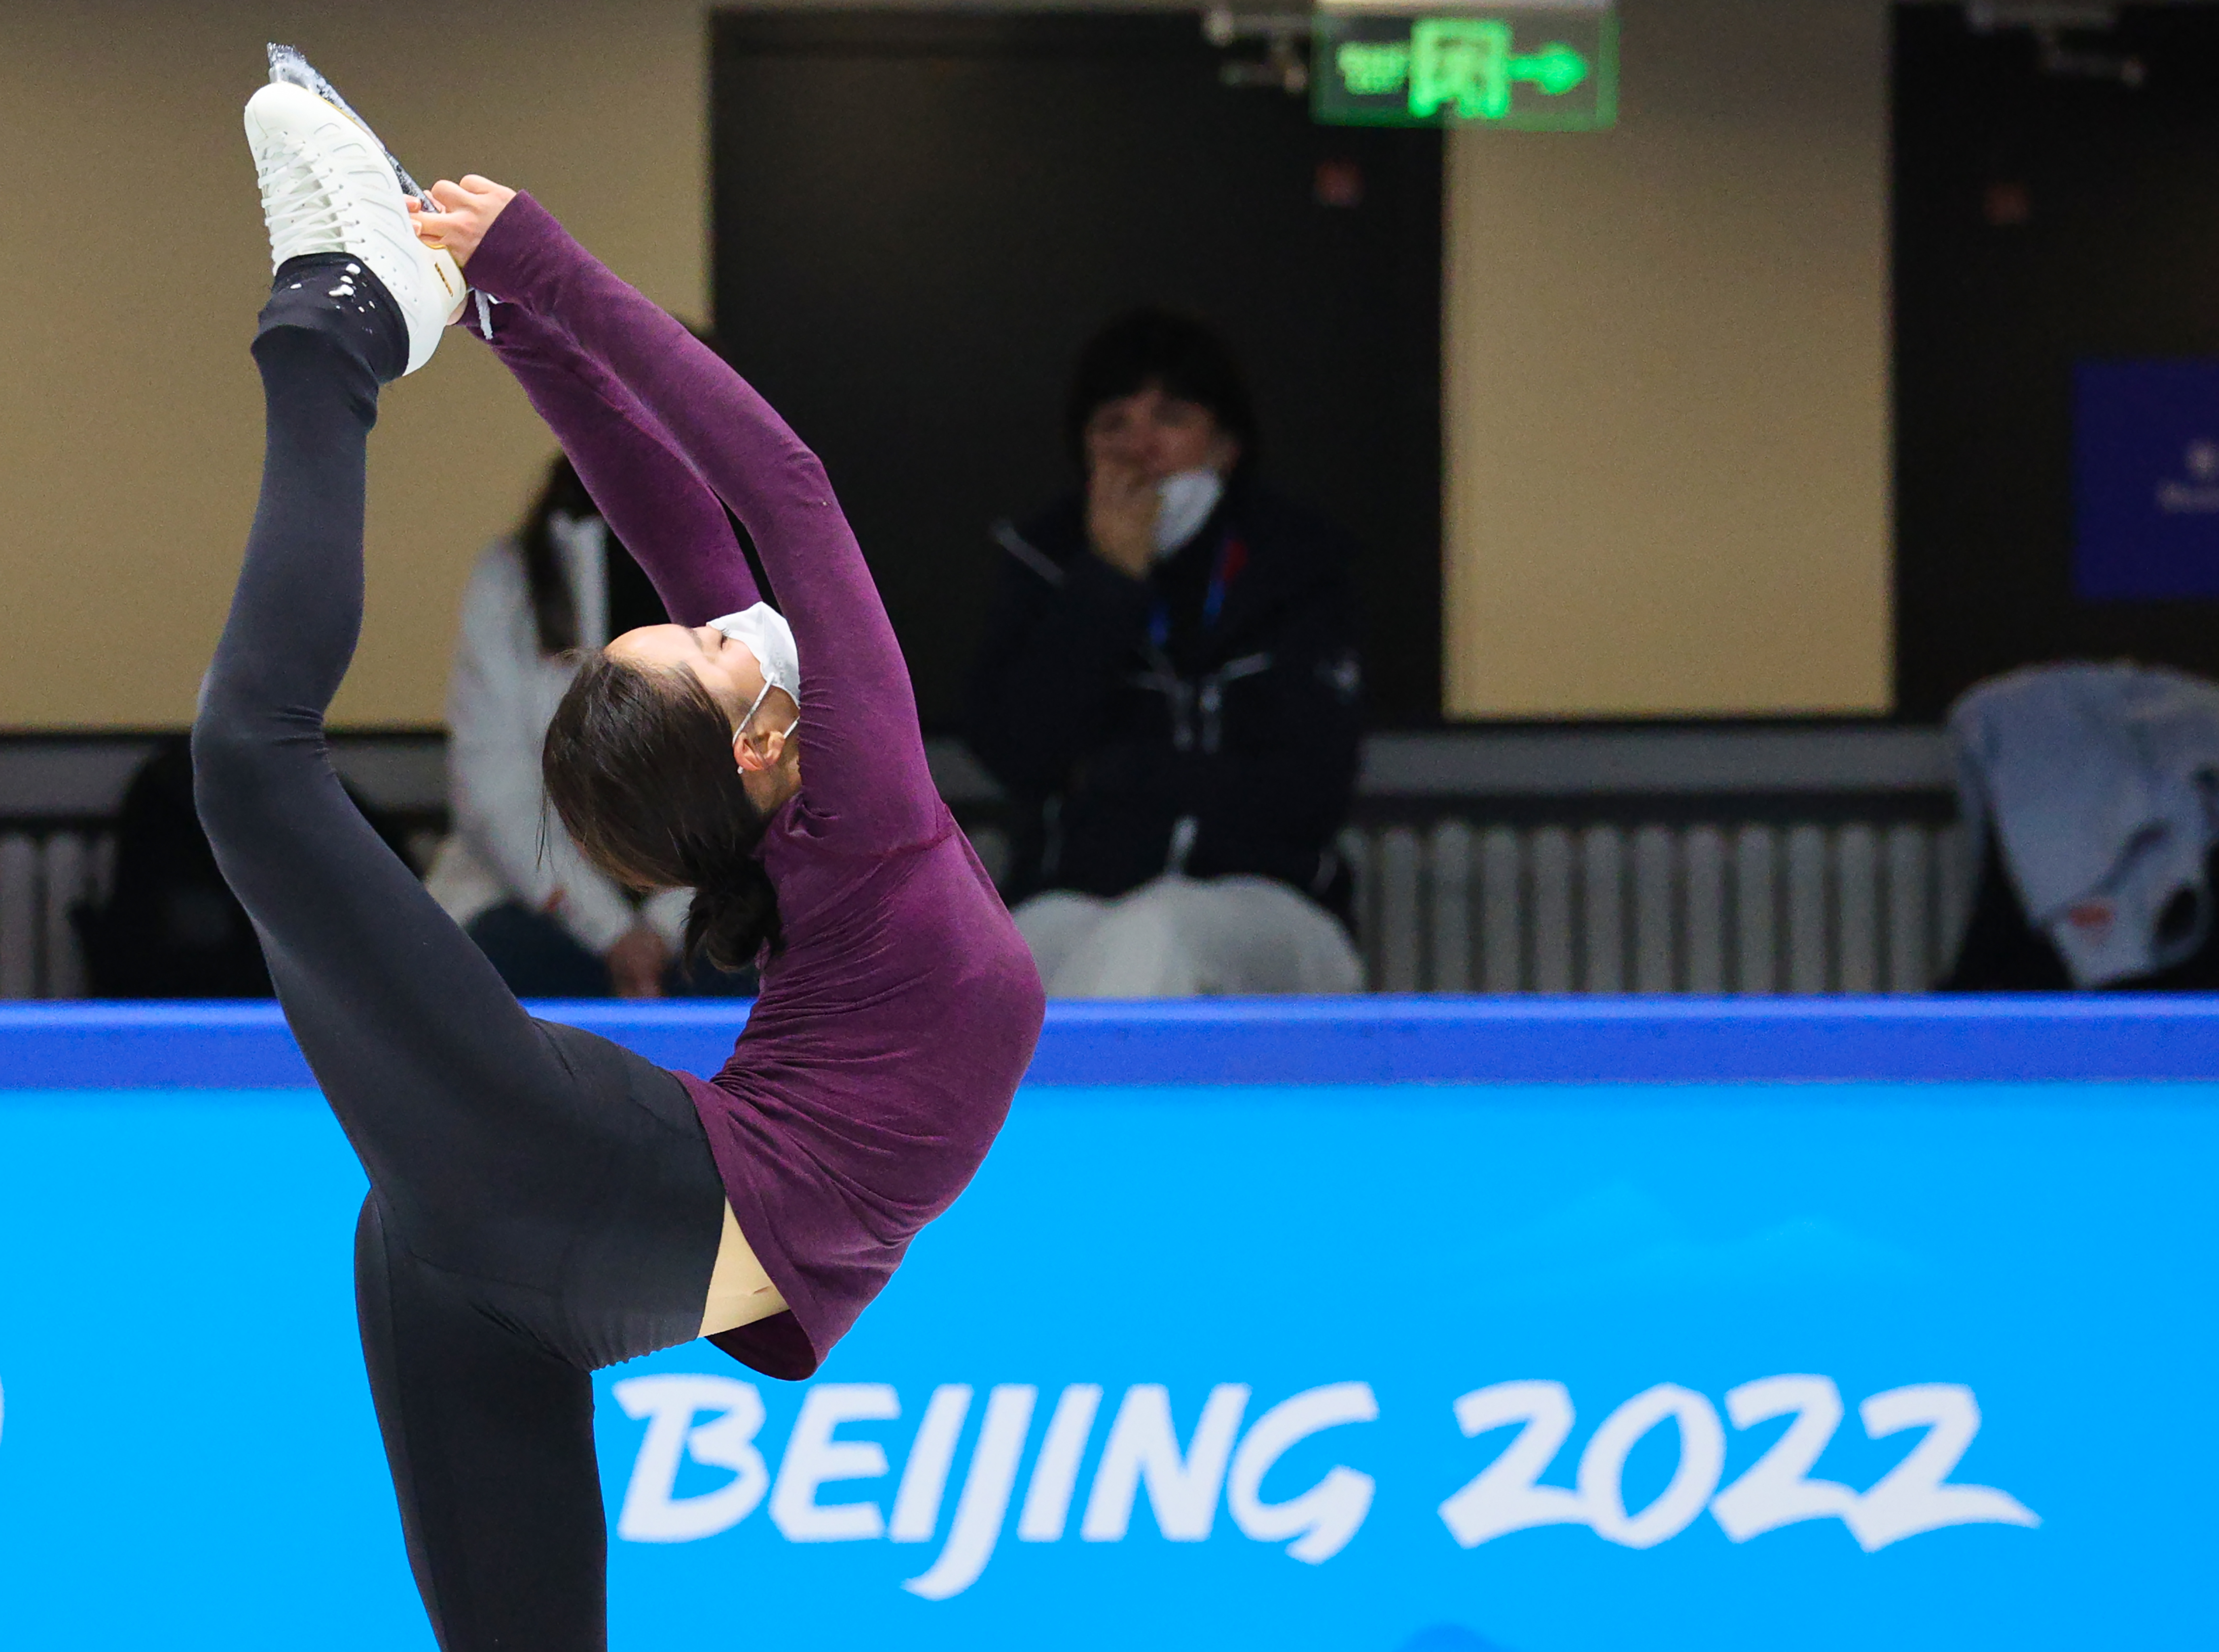 2022 베이징 동계올림픽 피겨스케이팅 여자 싱글에 출전한 유영이 14일 중국 베이징 캐피털 실내 경기장에서 공식훈련을 하고 있다 [출처 : 연합뉴스]